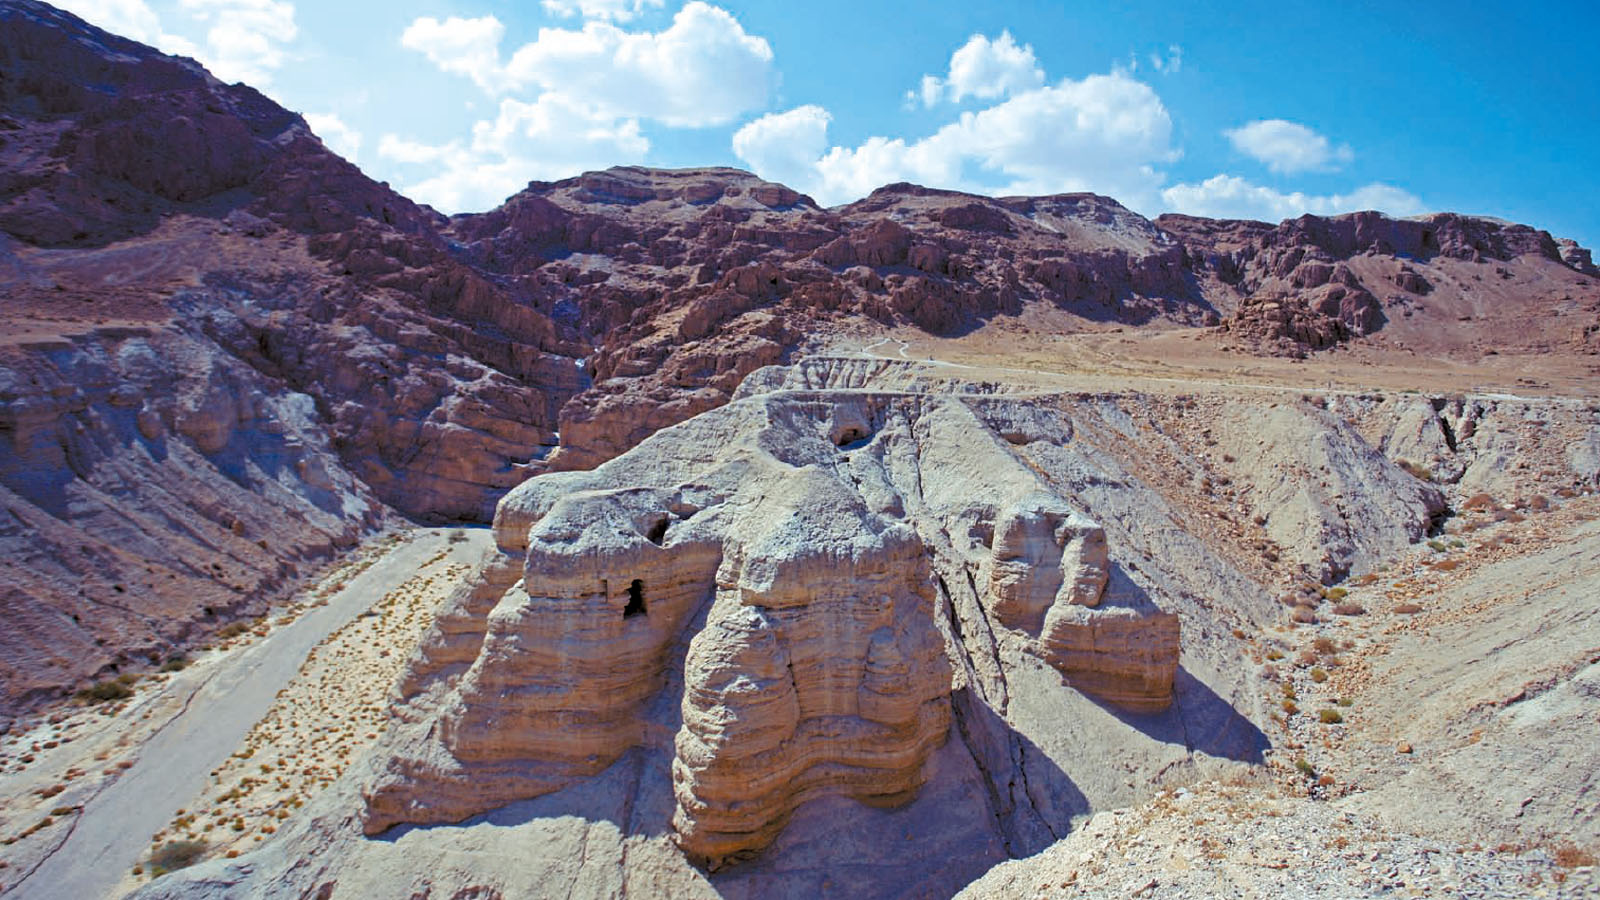 동부 사막에 자리한 쿰란 국립공원의 동굴 유적. 수천 년 전의 성경 필사본이 발견된 장소다.